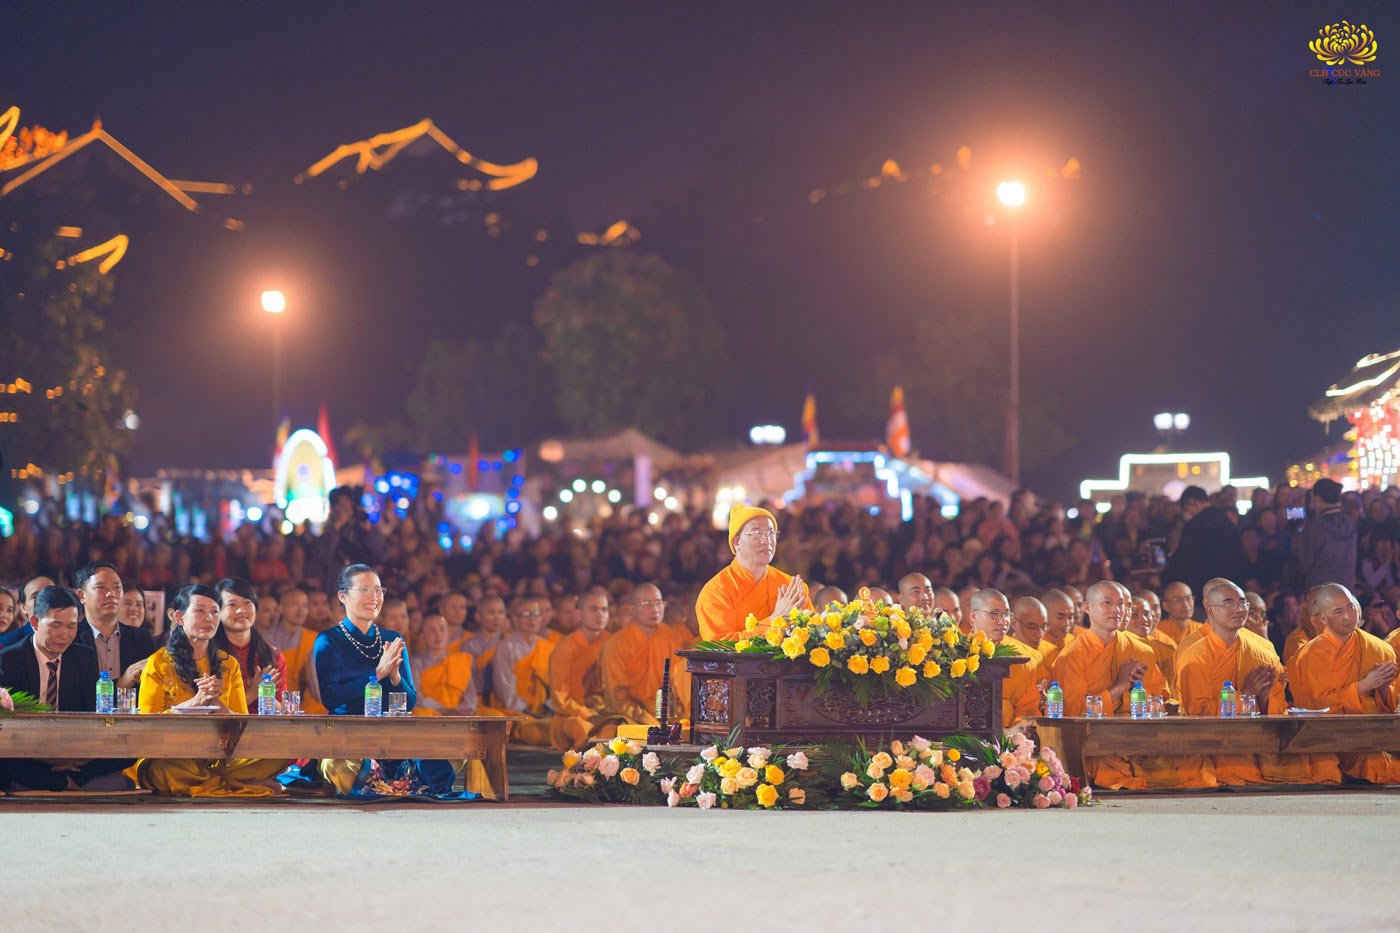 Sư Phụ Thích Trúc Thái Minh cùng chư tôn đức Tăng Ni chùa Ba Vàng quang minh tham dự chương trình đêm văn nghệ kính mừng sinh nhật Sư Phụ lần thứ 56, sinh nhật CLB Cúc Vàng 2023.